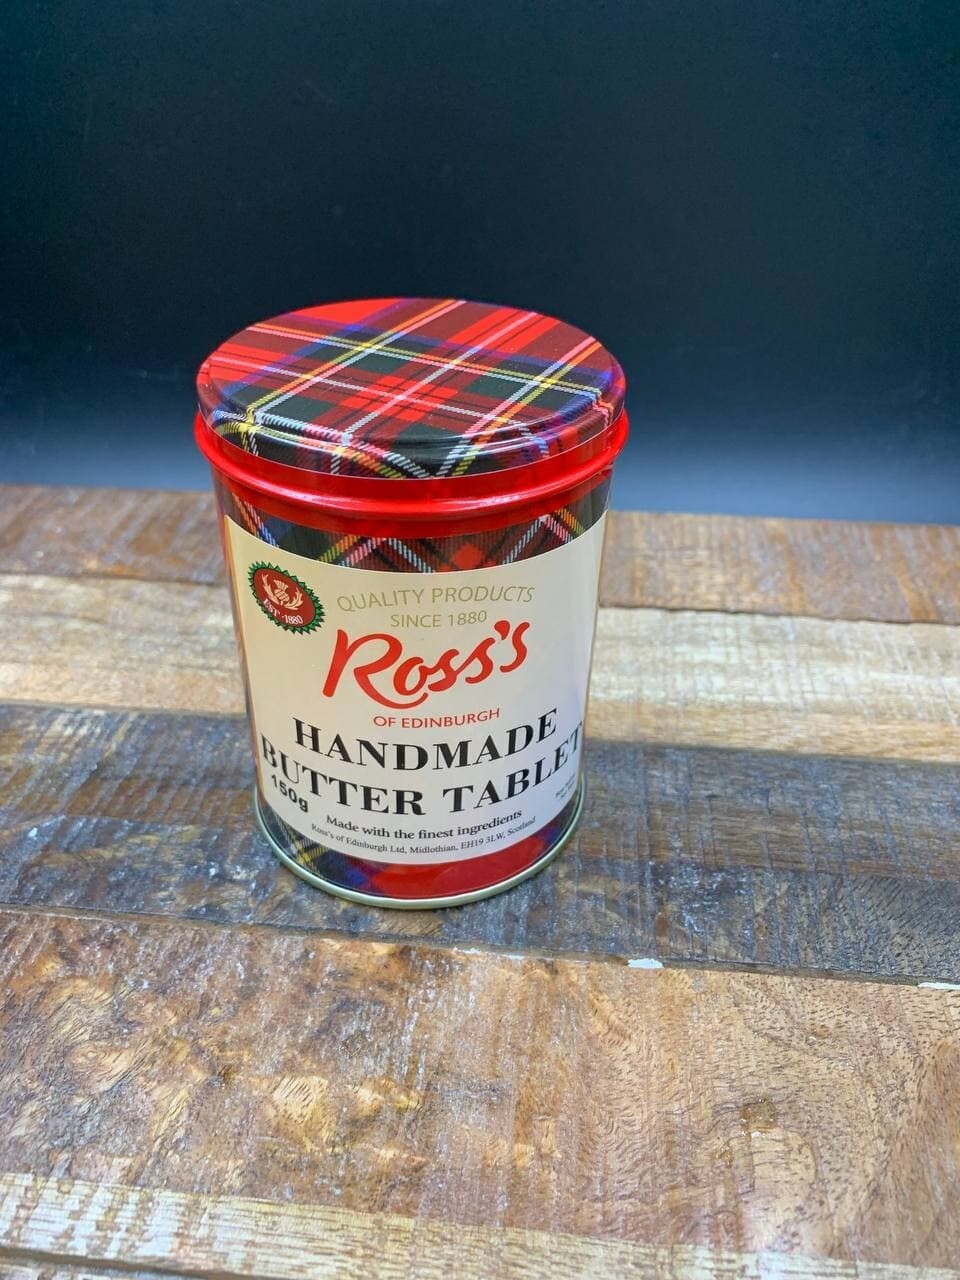 Ross's Of Edinburgh Handmade Butter Tablet 150g